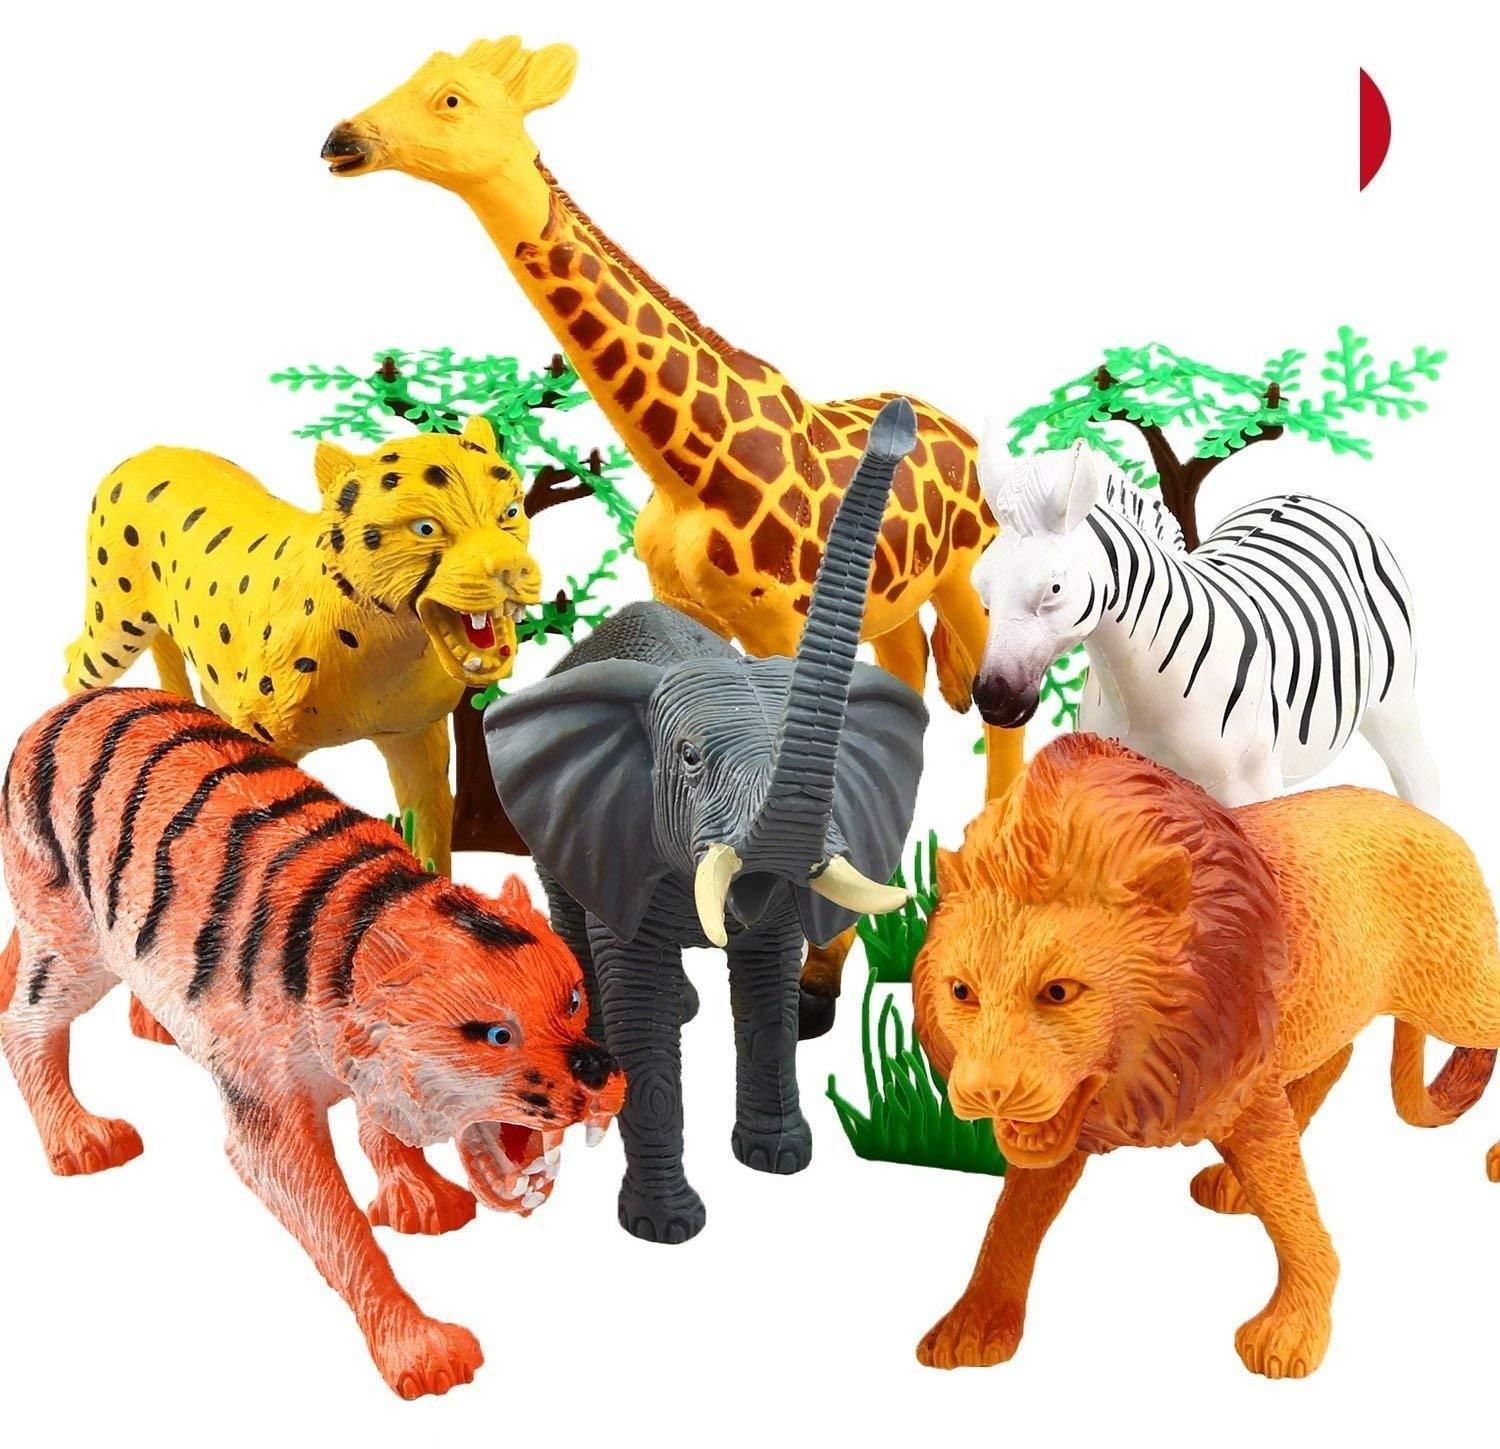 Игрушку animals. Игрушки животные. Zoo игрушки. Игрушки джунгли. Джунгли животных игрушки.